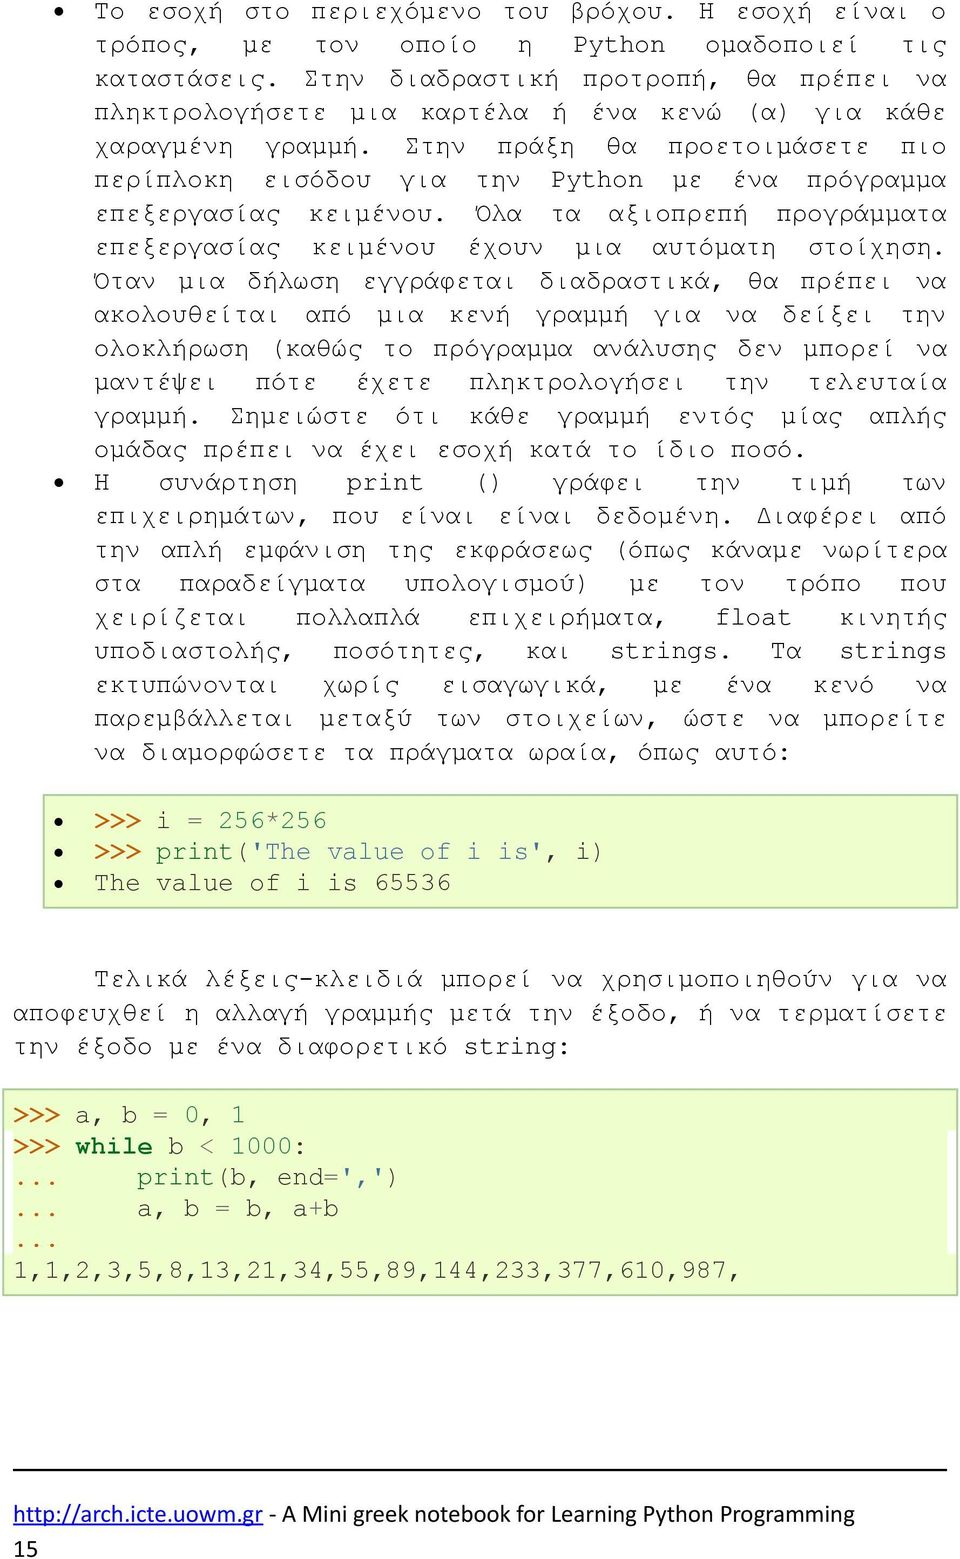 Στην πράξη θα προετοιμάσετε πιο περίπλοκη εισόδου για την Python με ένα πρόγραμμα επεξεργασίας κειμένου. Όλα τα αξιοπρεπή προγράμματα επεξεργασίας κειμένου έχουν μια αυτόματη στοίχηση.